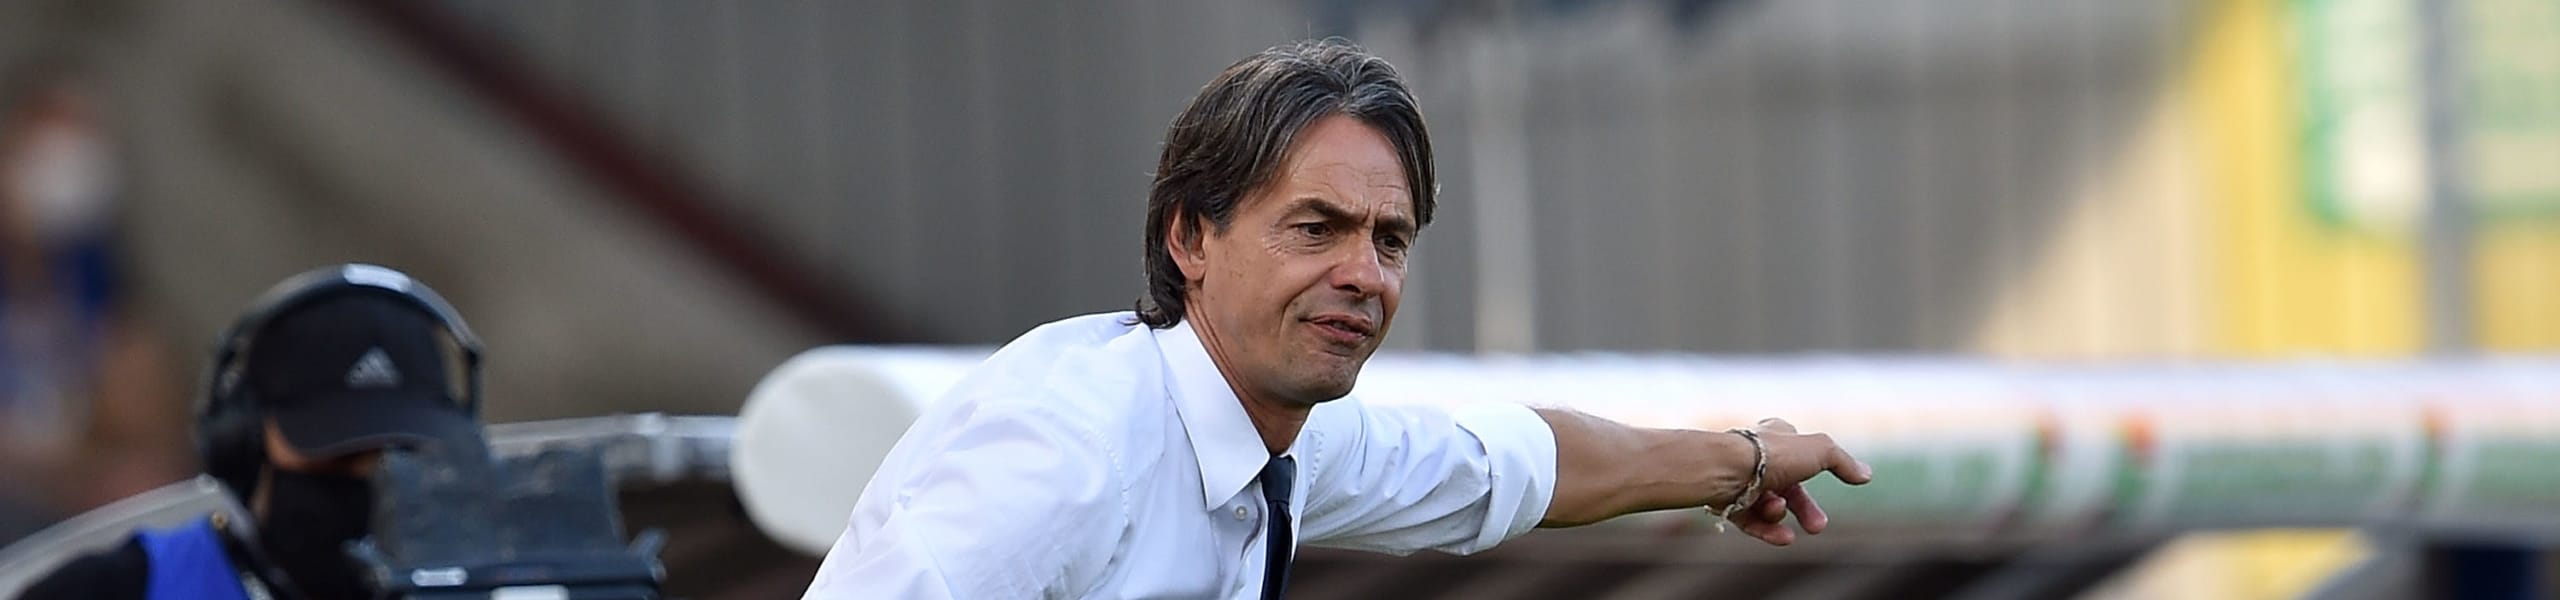 Benevento-Verona, Inzaghi cerca di uscire dalle sabbie mobili